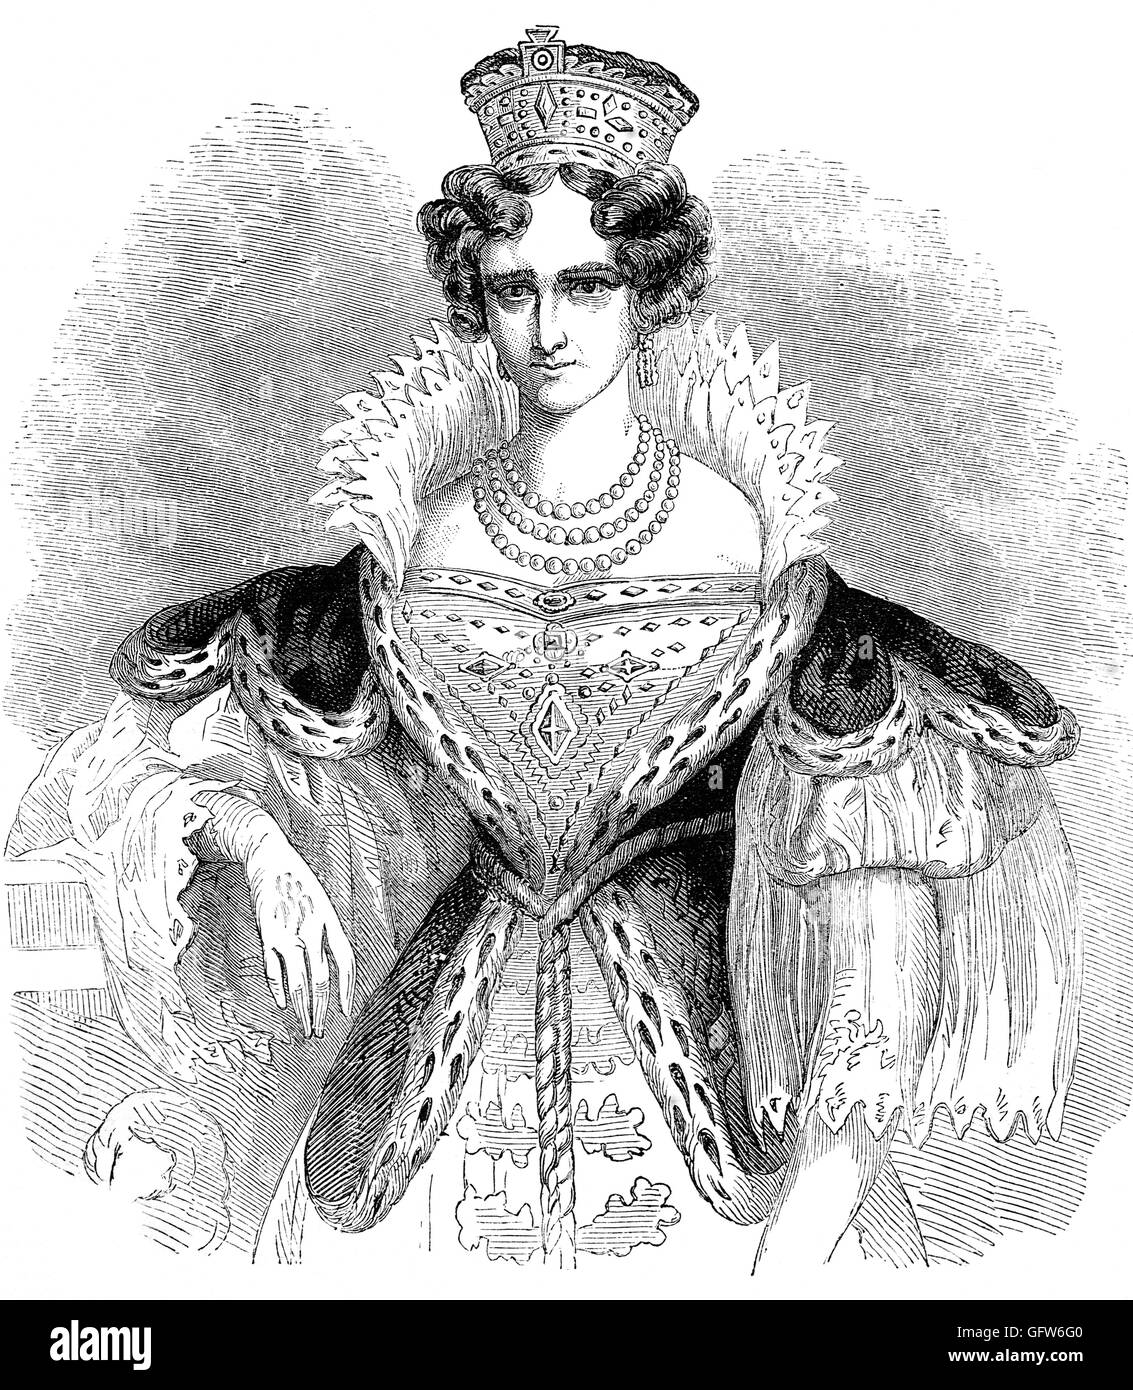 Adelaide di Sax-Meiningen (1792 - 1849) fu la regina consorte del Regno Unito e di Hannover come sposa di Guglielmo IV del Regno Unito. Adelaide era figlia di Giorgio I, Duca di Sax-Meiningen e Luise Eleonore, figlia del principe cristiano di Hohenlohe-Langenburg. Foto Stock